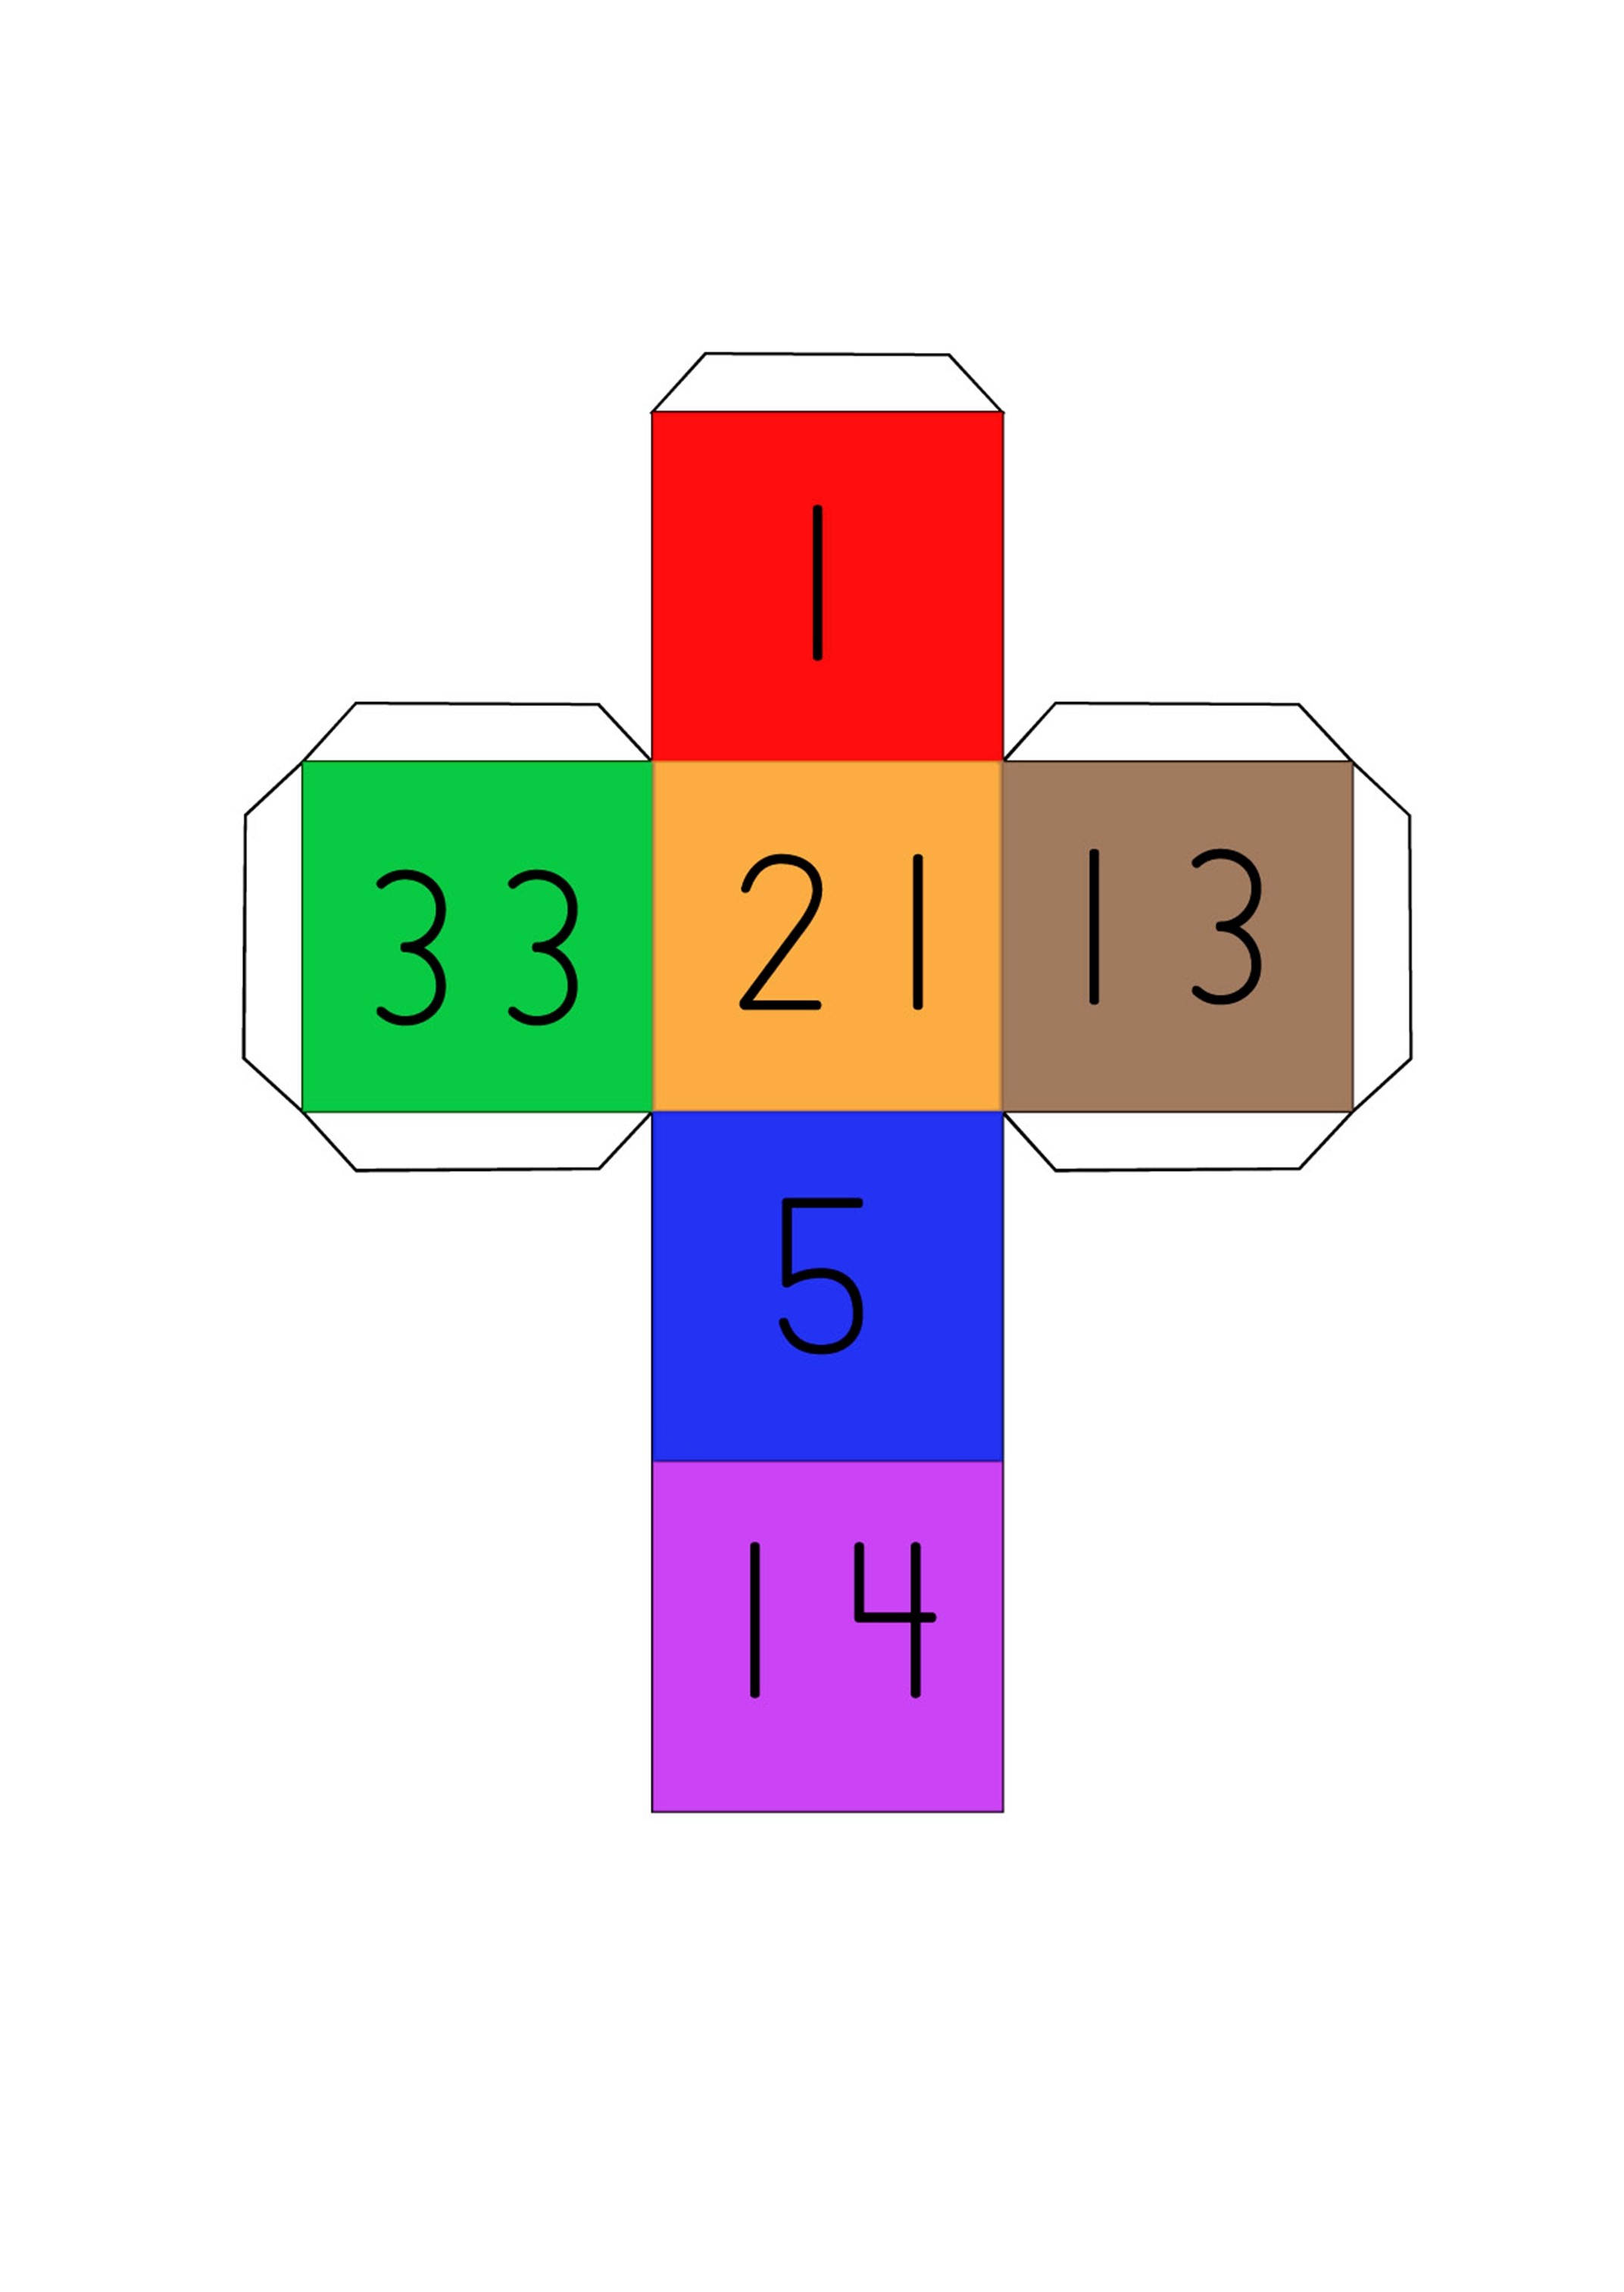 Matemaatikaga seotud mängud Cubico10